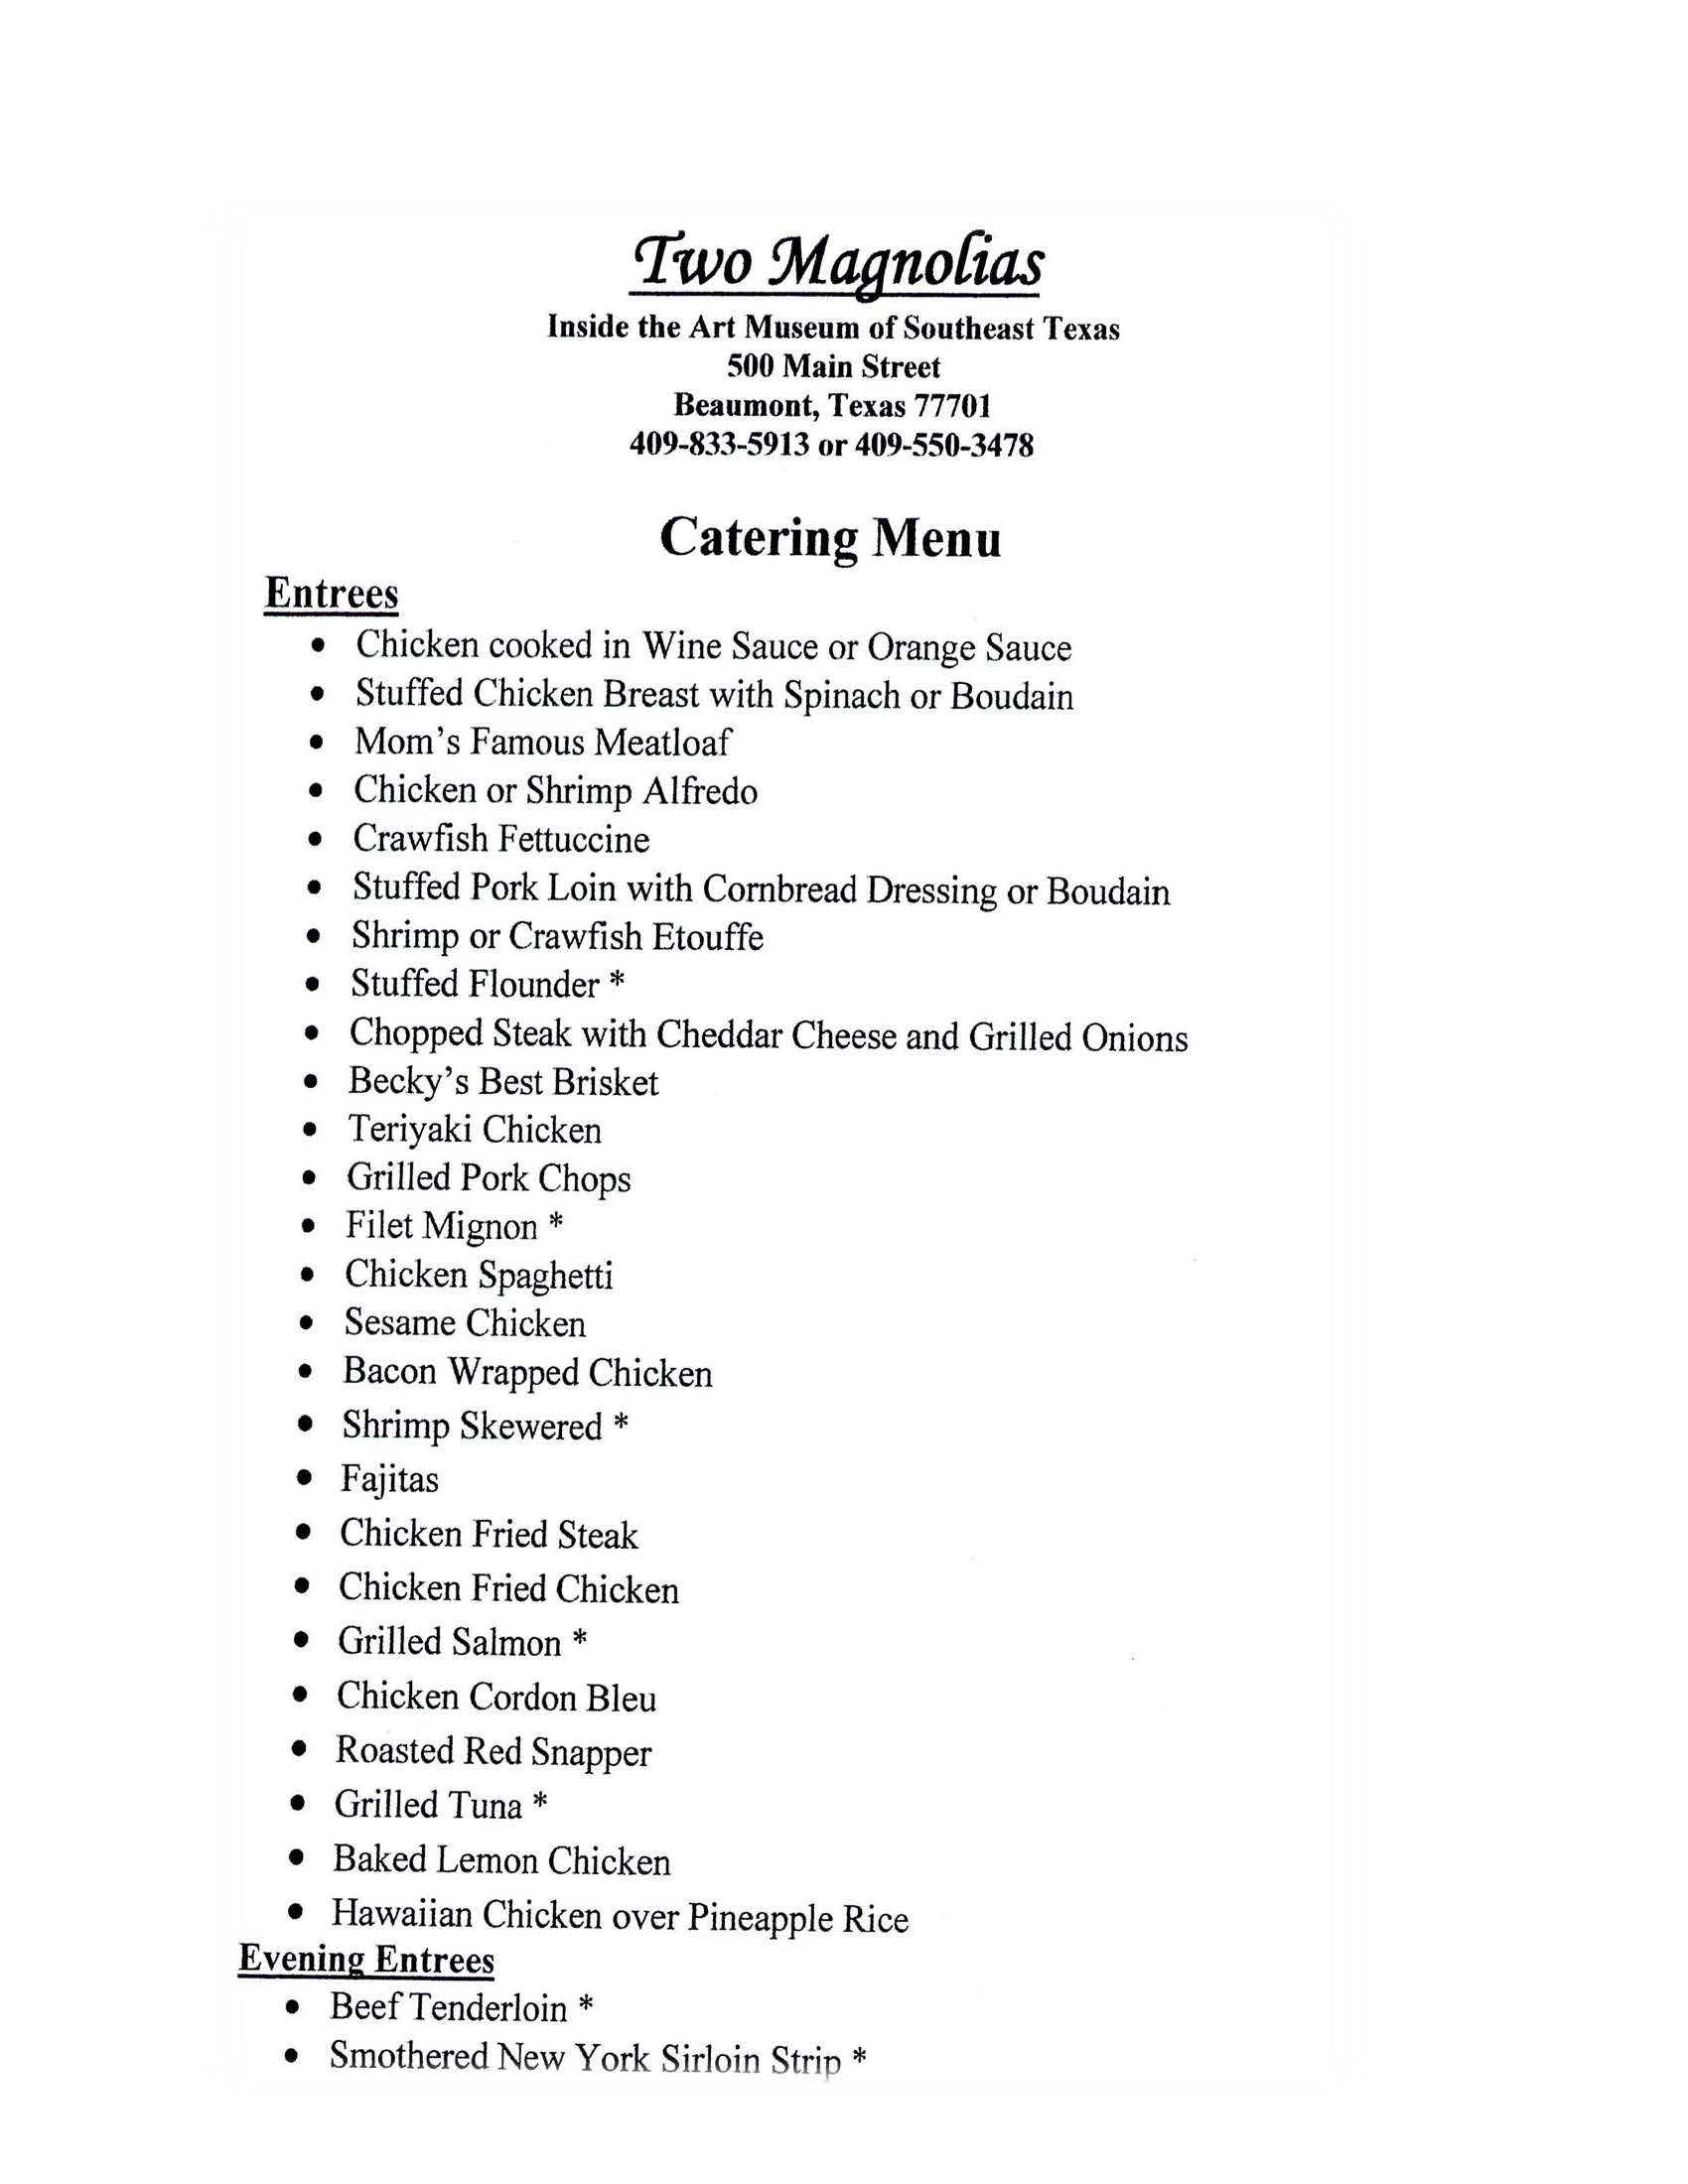 catering menu Beaumont TX, catering menu Southeast Texas, SETX catering menu, catering menu Golden Triangle